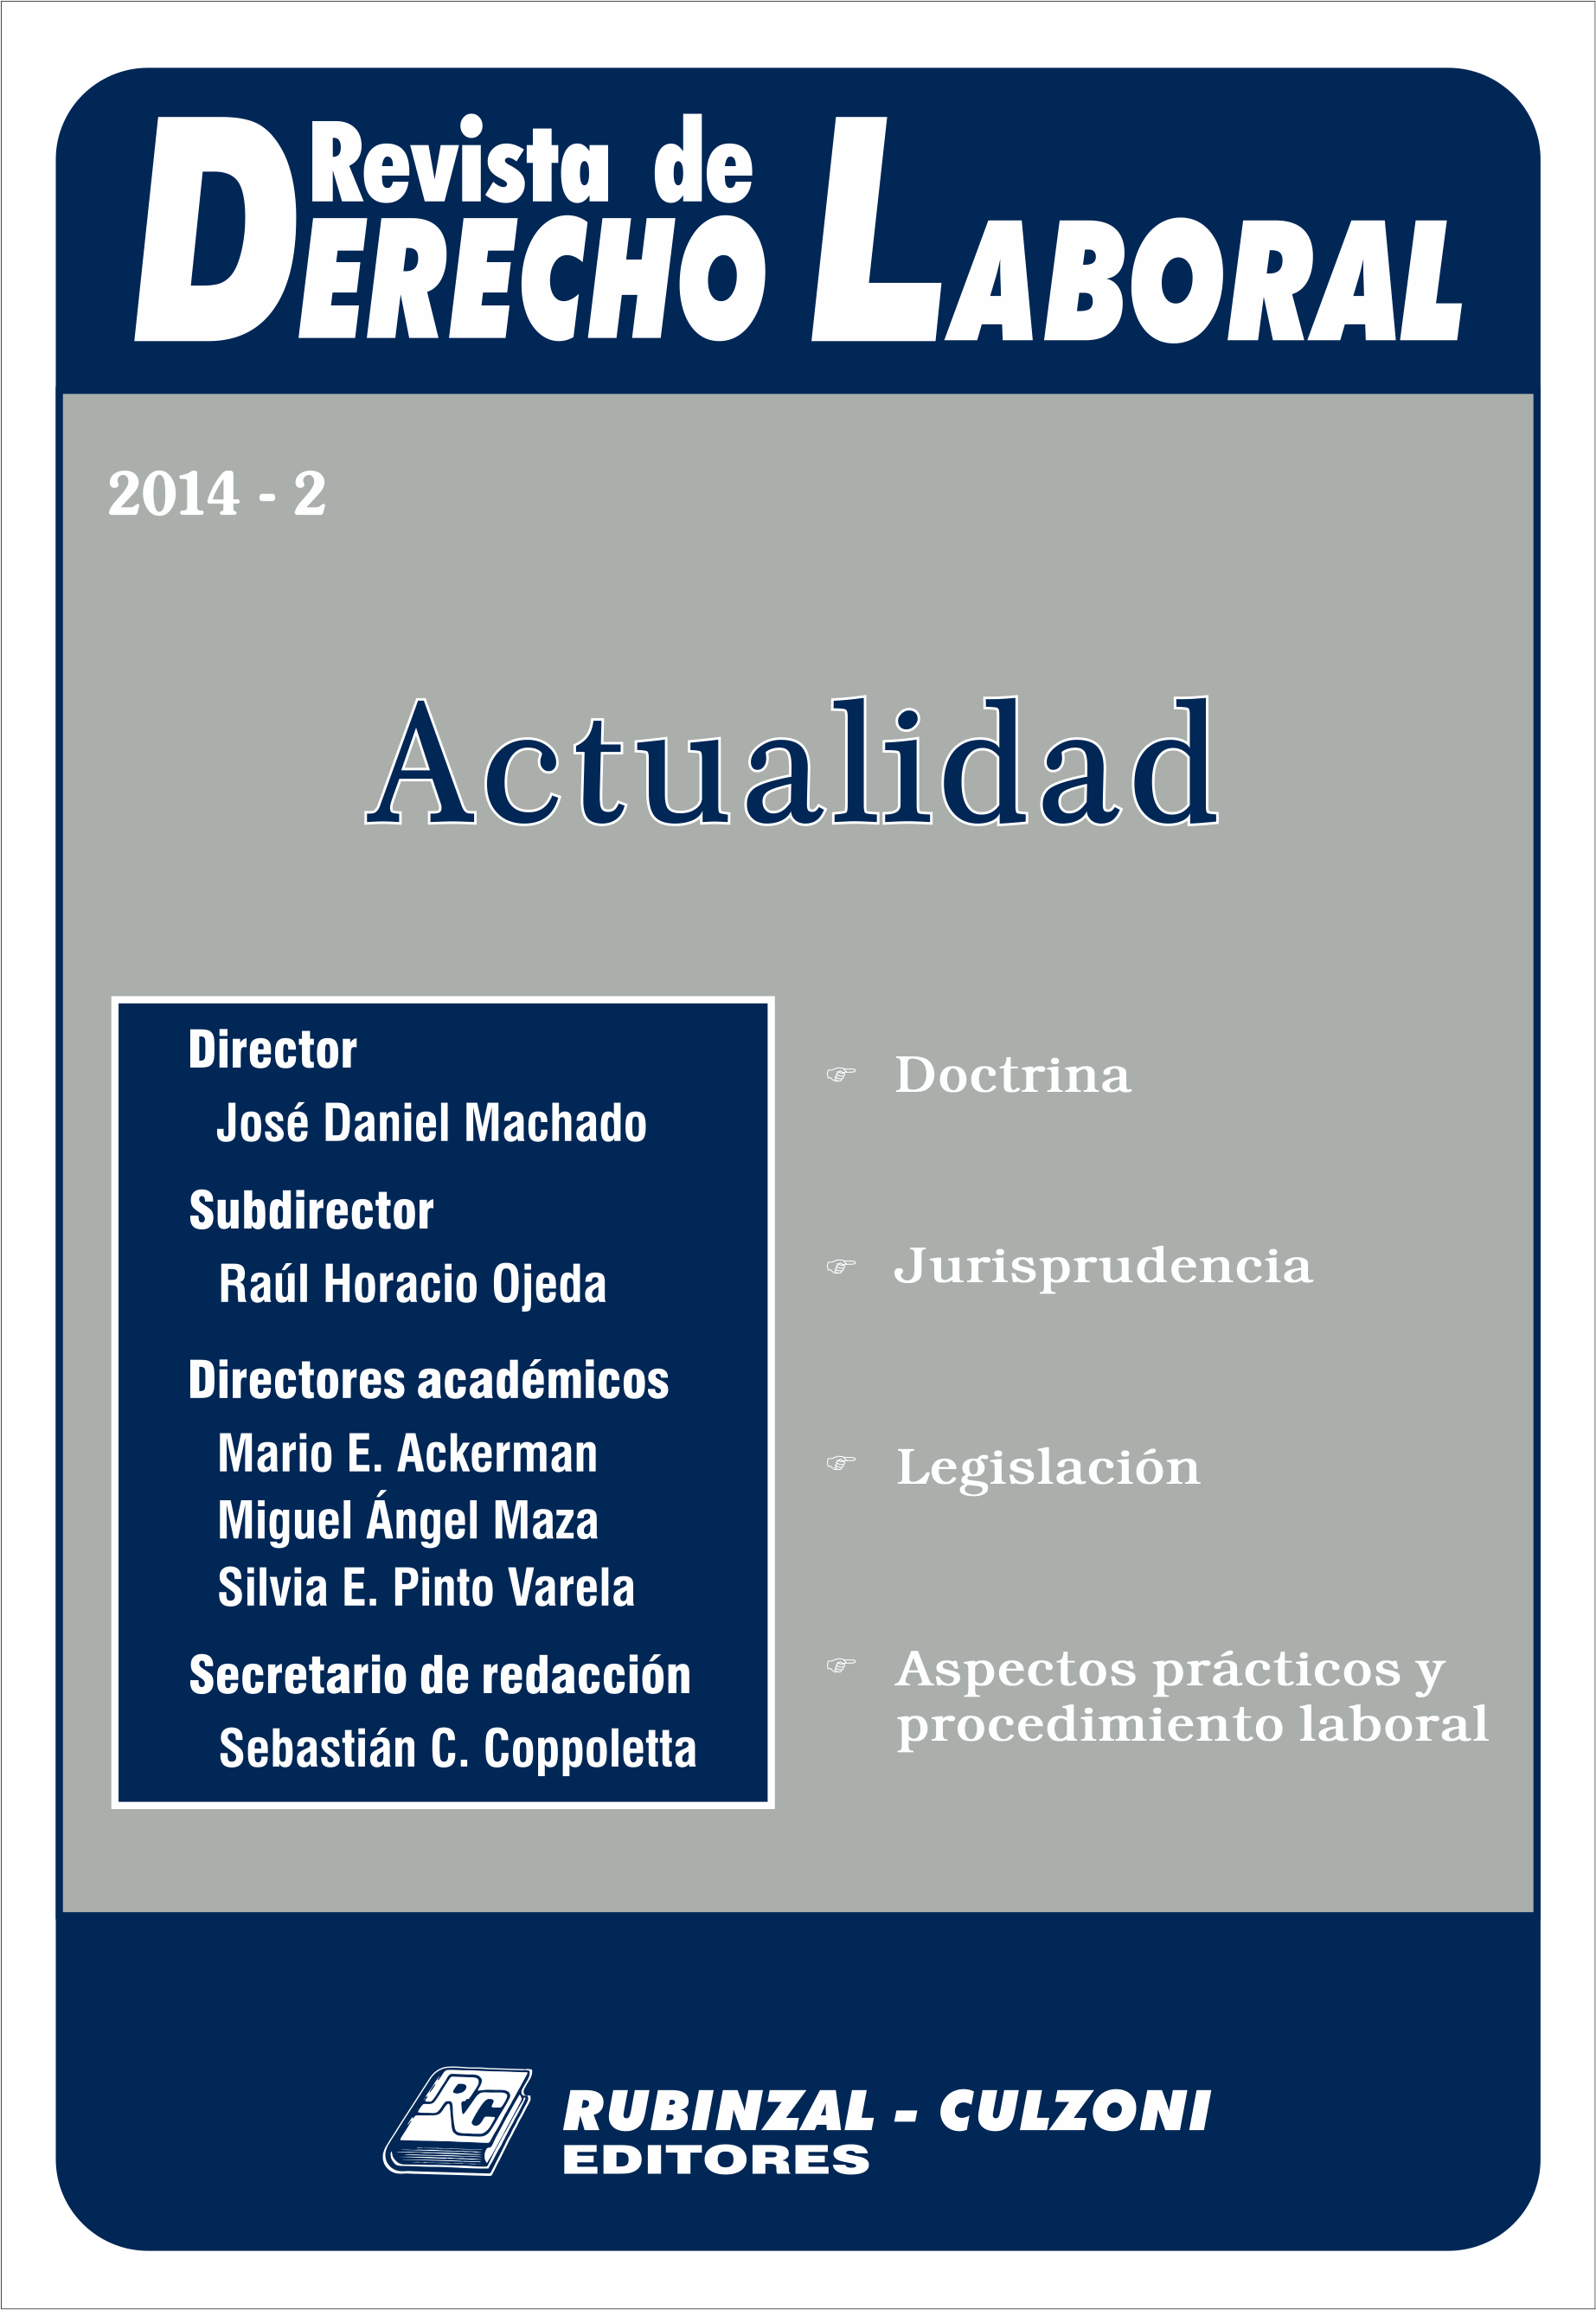 Revista de Derecho Laboral Actualidad - Año 2014 - 2.